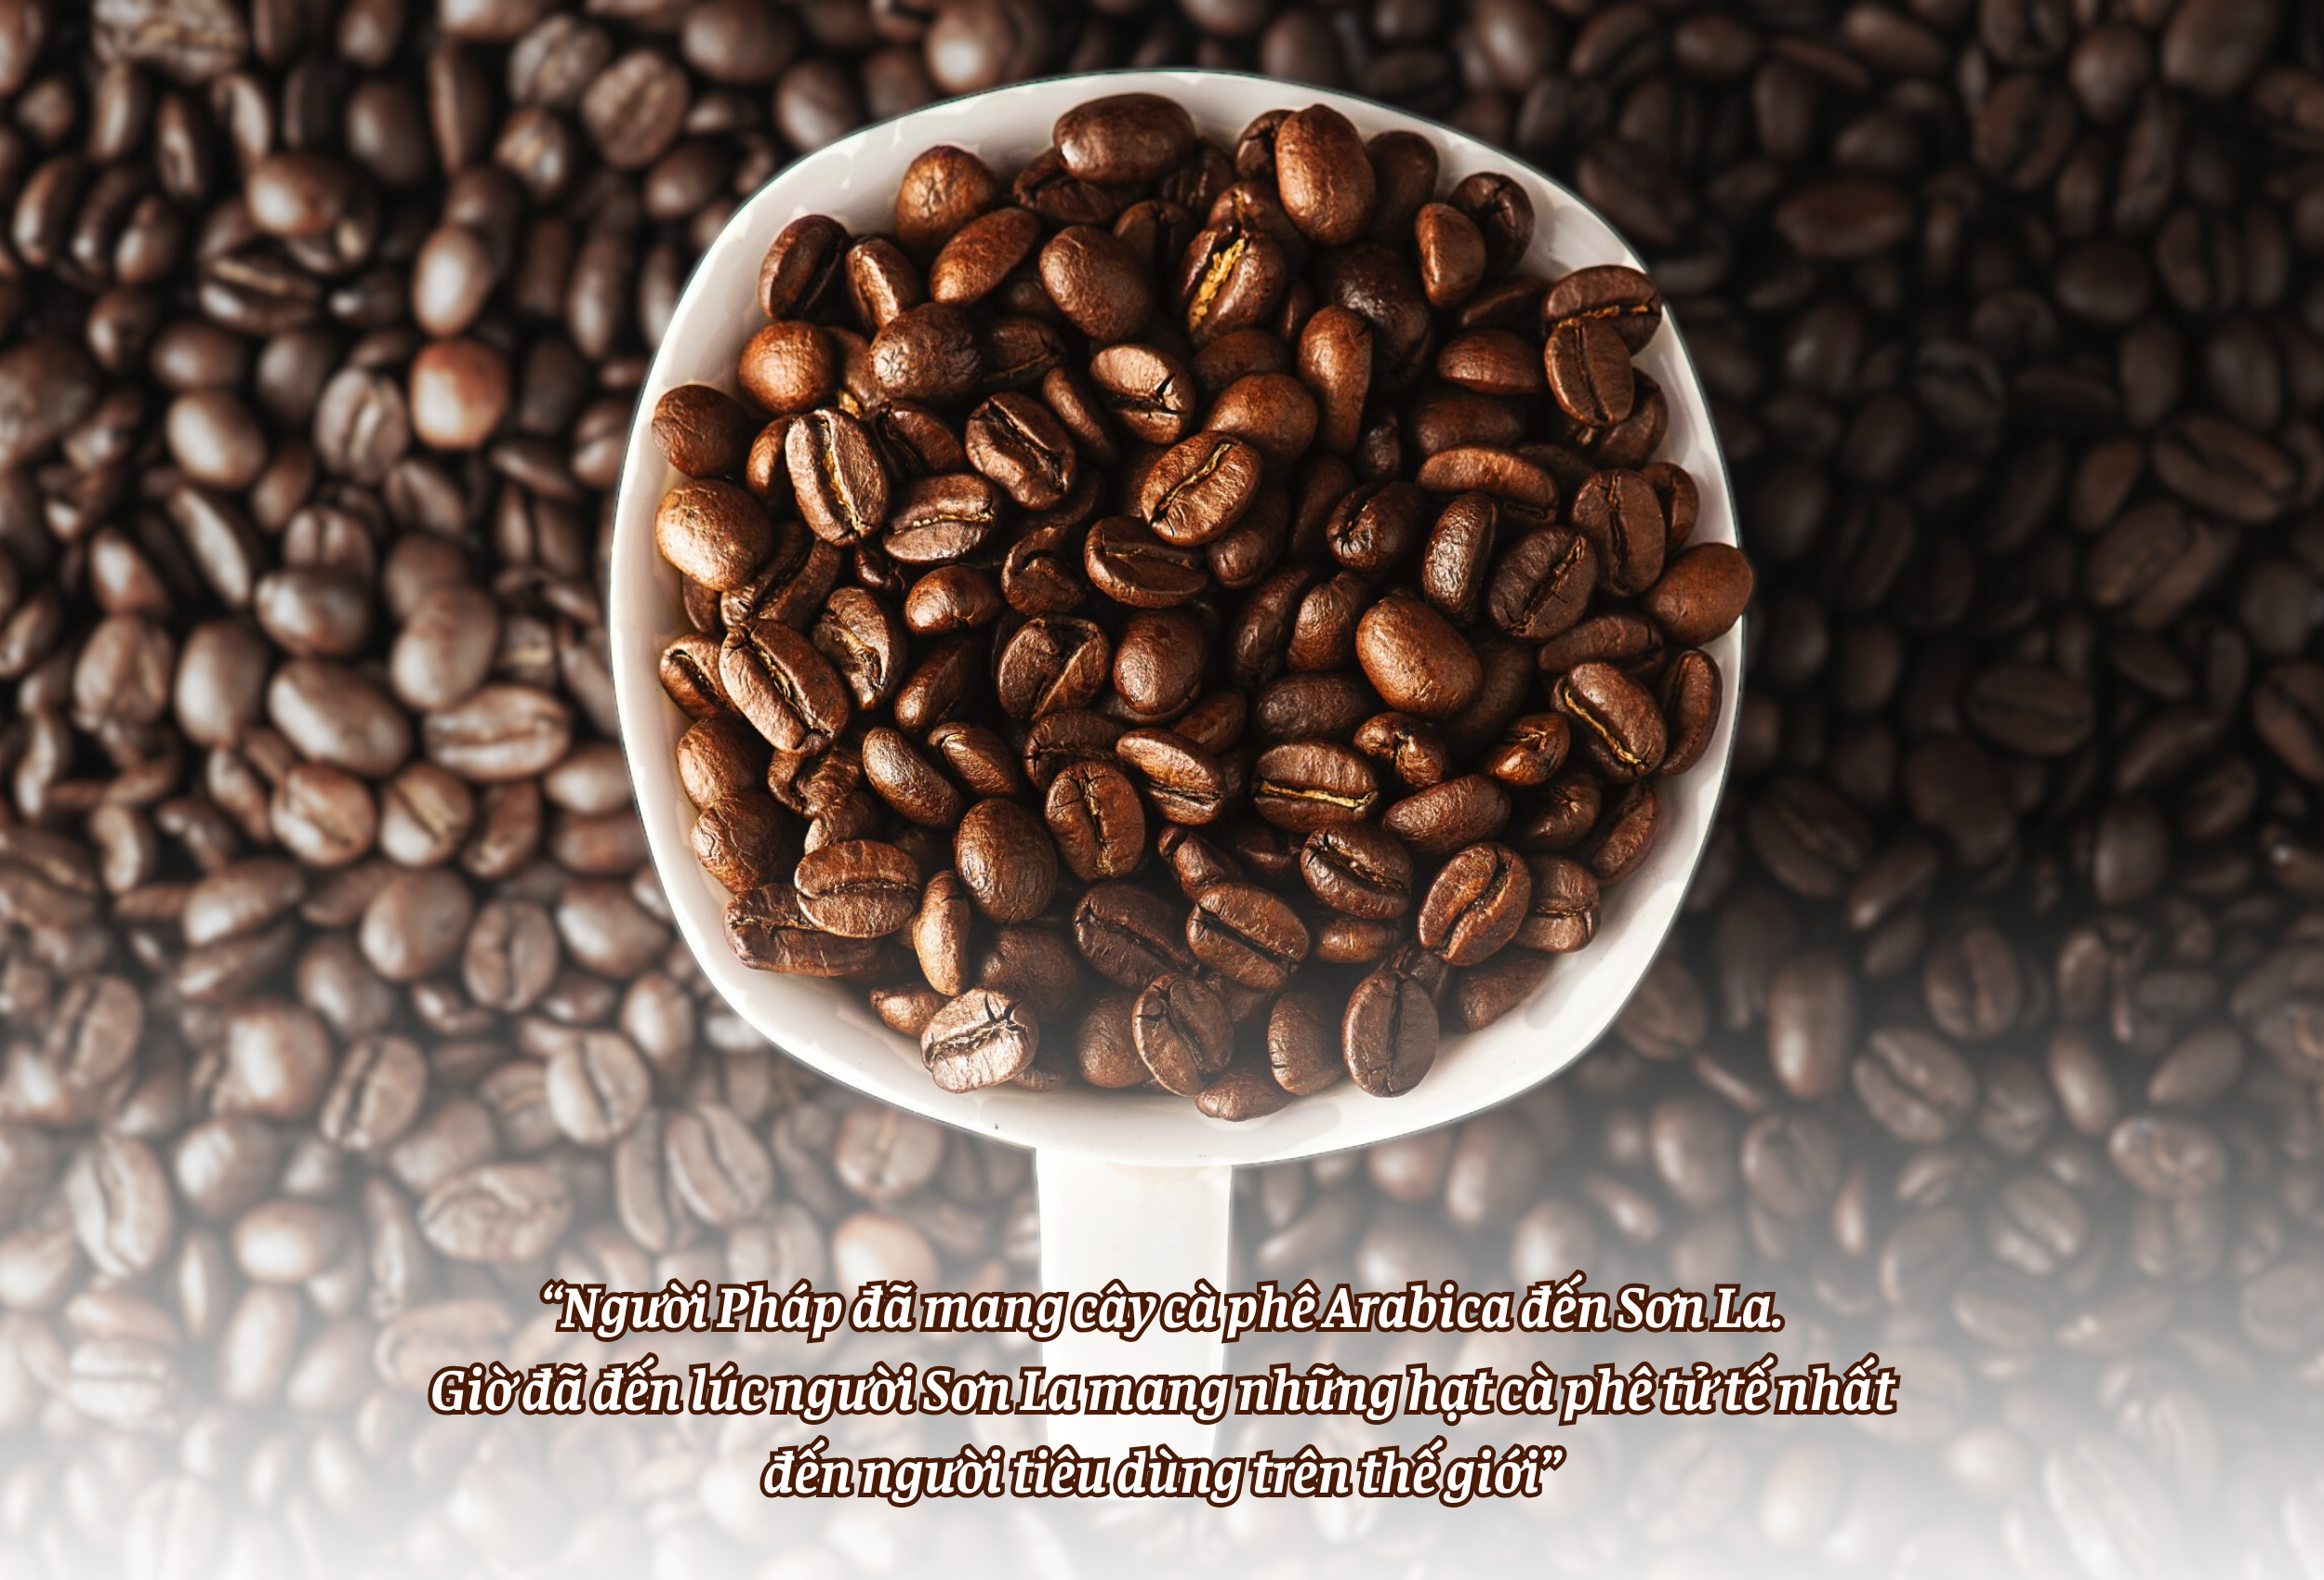 Longform | Ara-Tay Coffee và “hạt cà phê tử tế” của phụ nữ dân tộc Thái